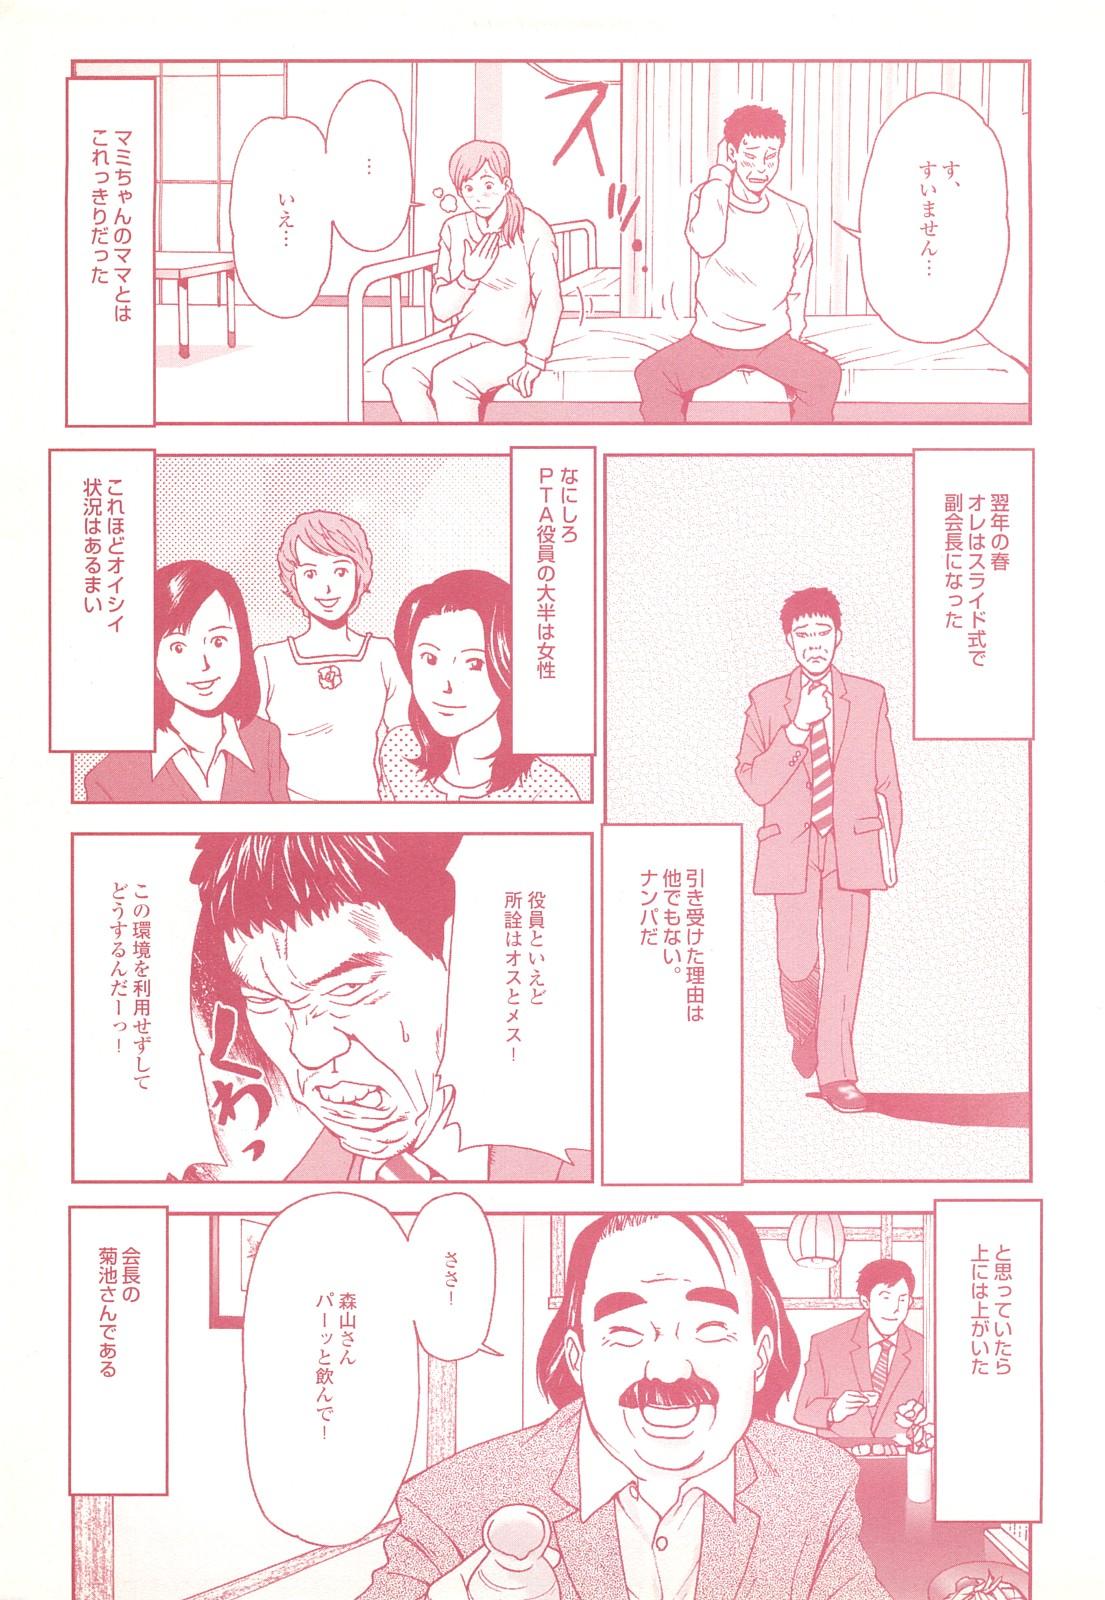 コミック裏モノJAPAN Vol.18 今井のりたつスペシャル号 112